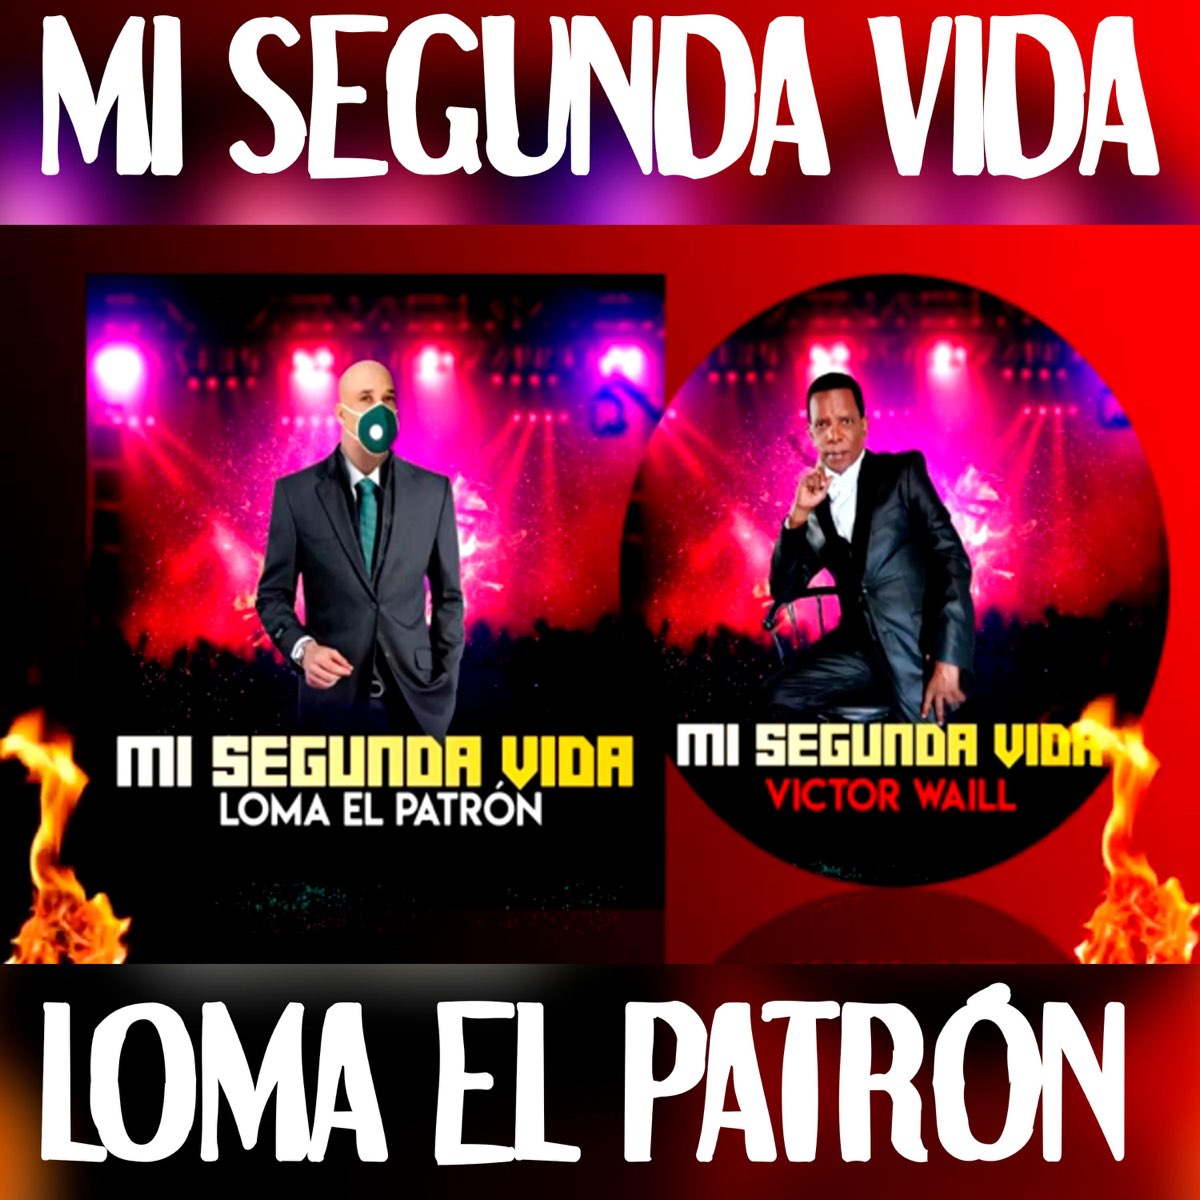 Mi Segunda Vida - Single by LOMA EL PATRON on Apple Music